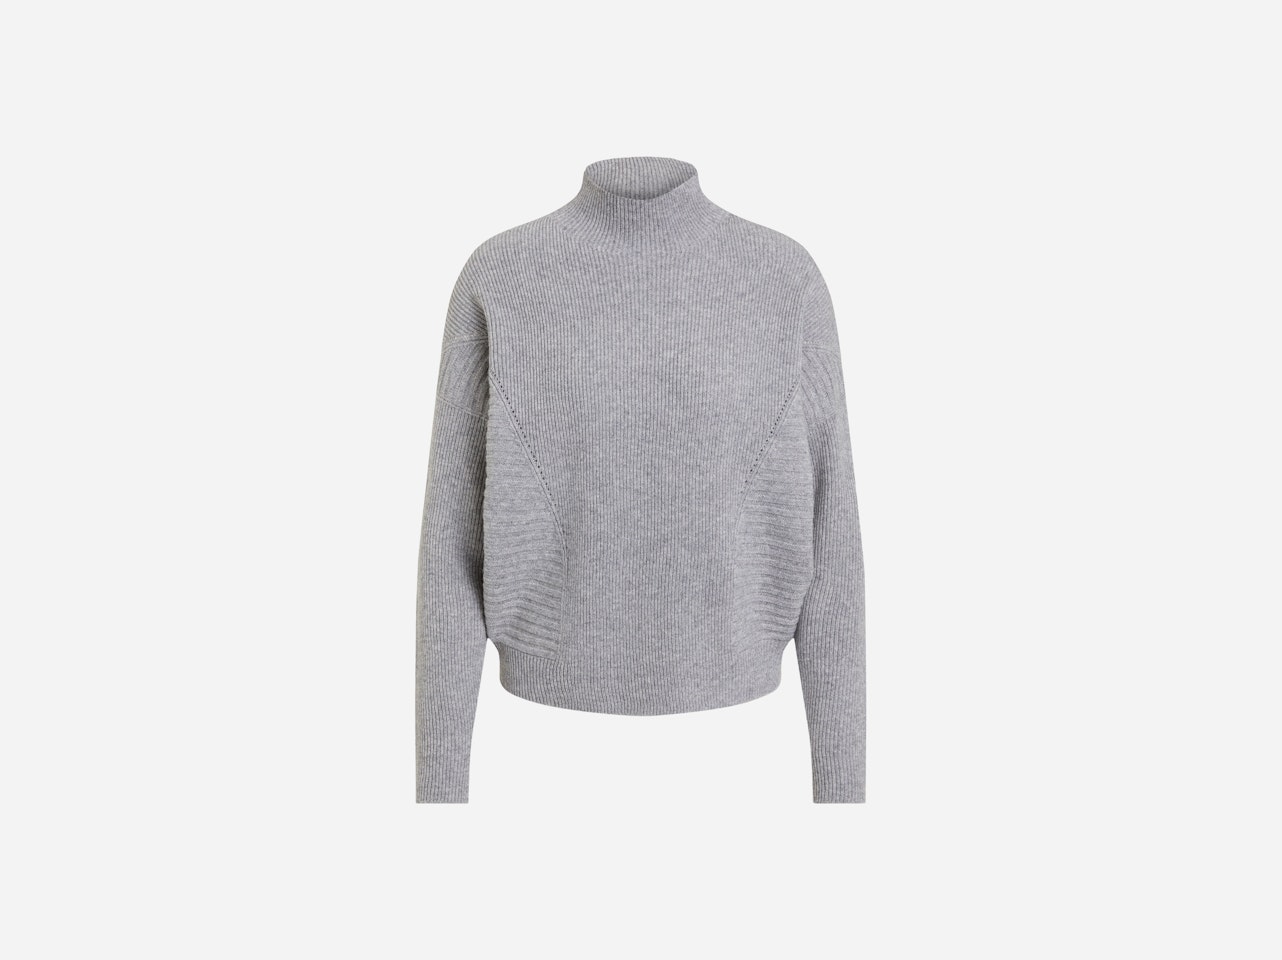 Bild 7 von Knitted jumper wool blend in light grey | Oui